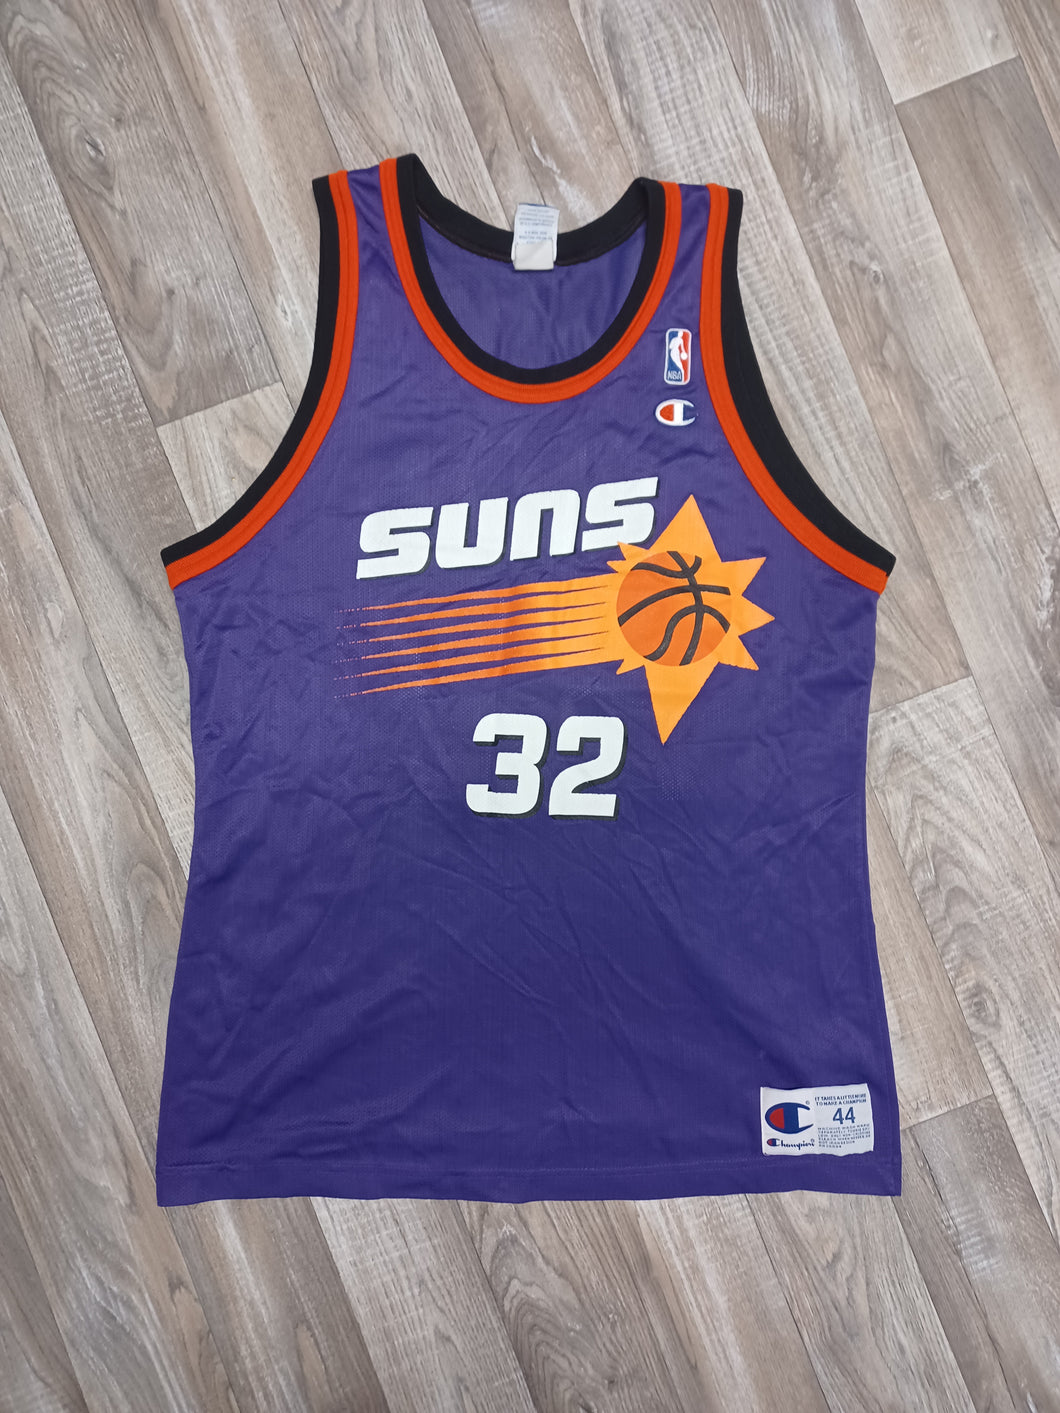 Jason Kidd Phoenix Suns Jersey Size Large